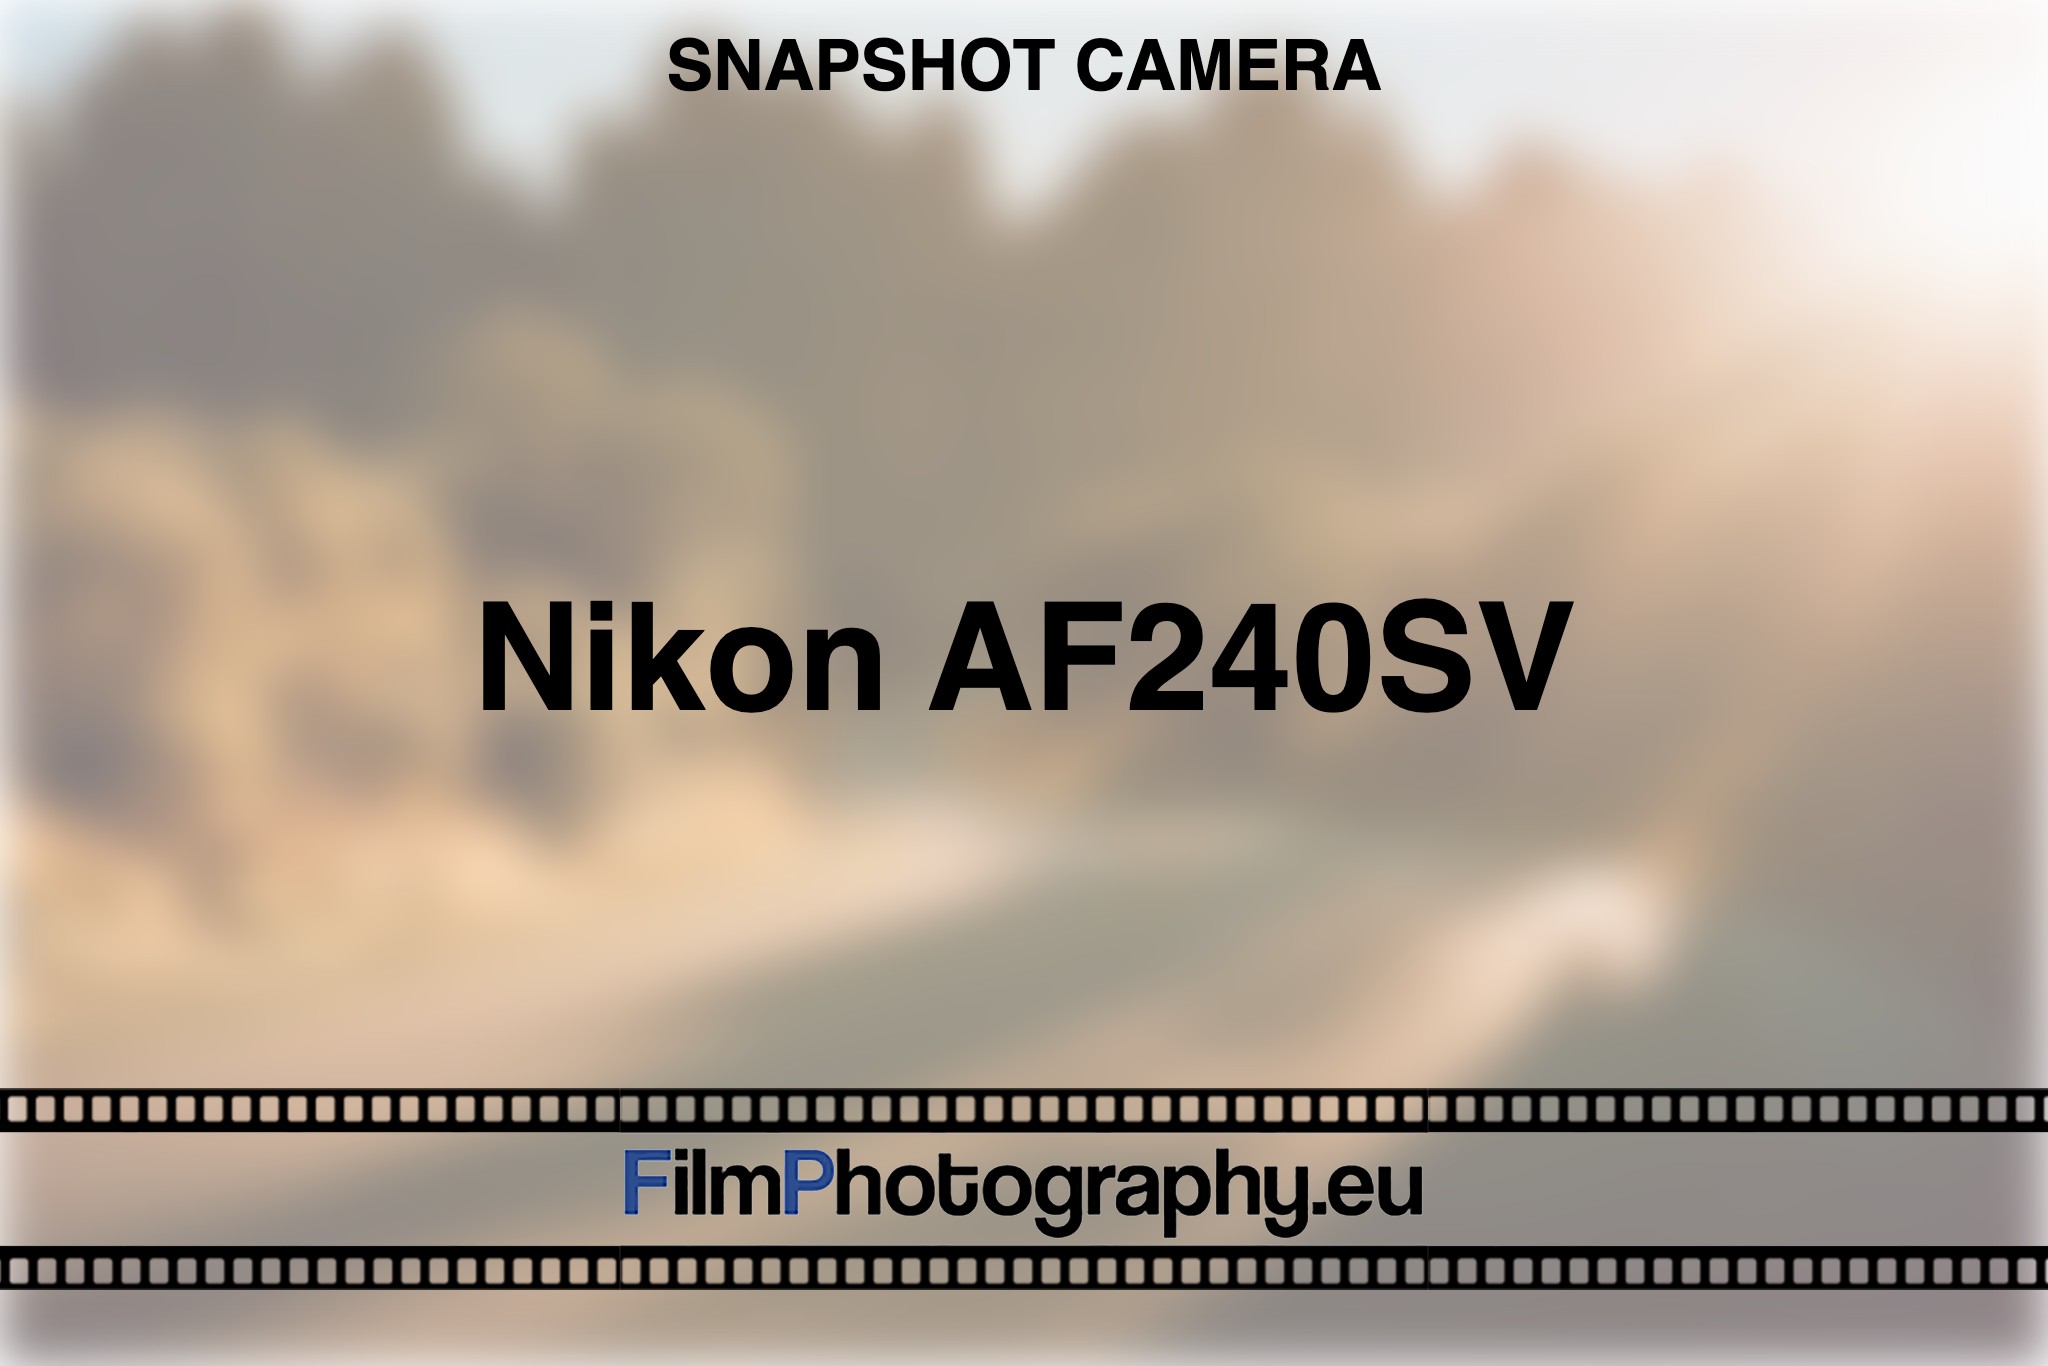 nikon-af240sv-snapshot-camera-bnv